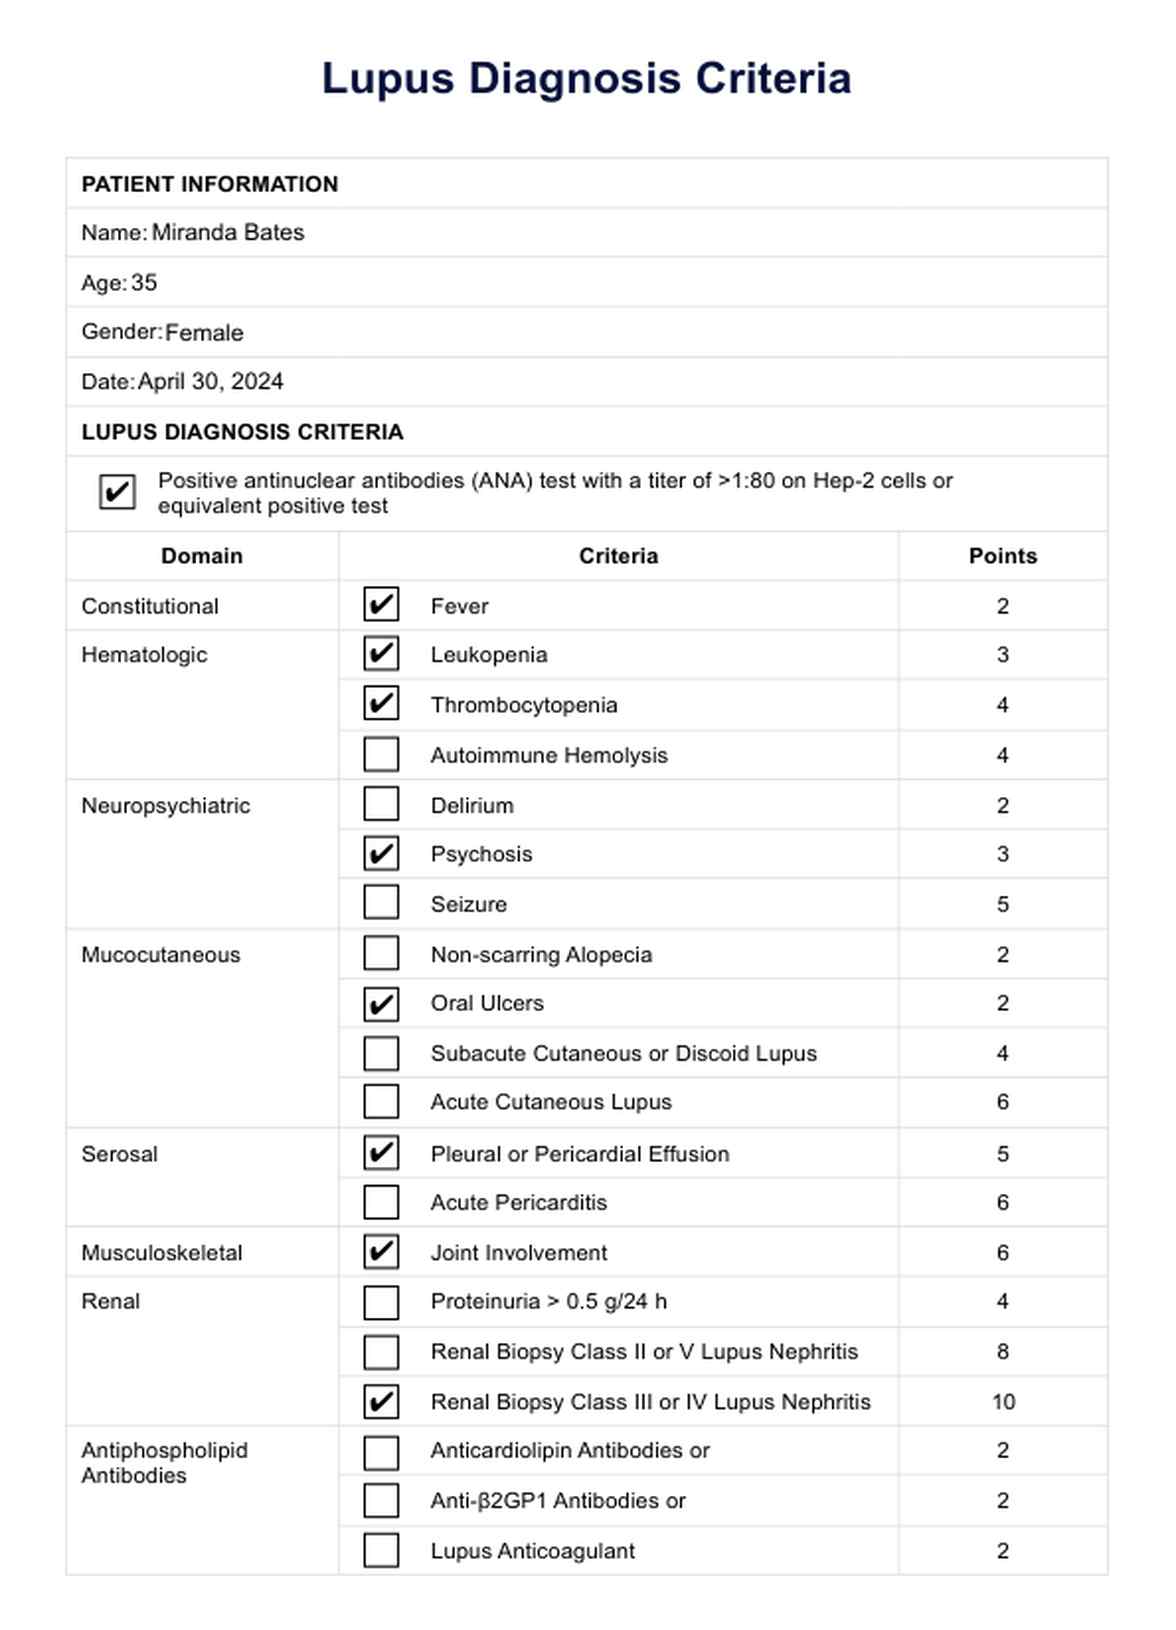 Lupus Diagnosis Criteria PDF Example